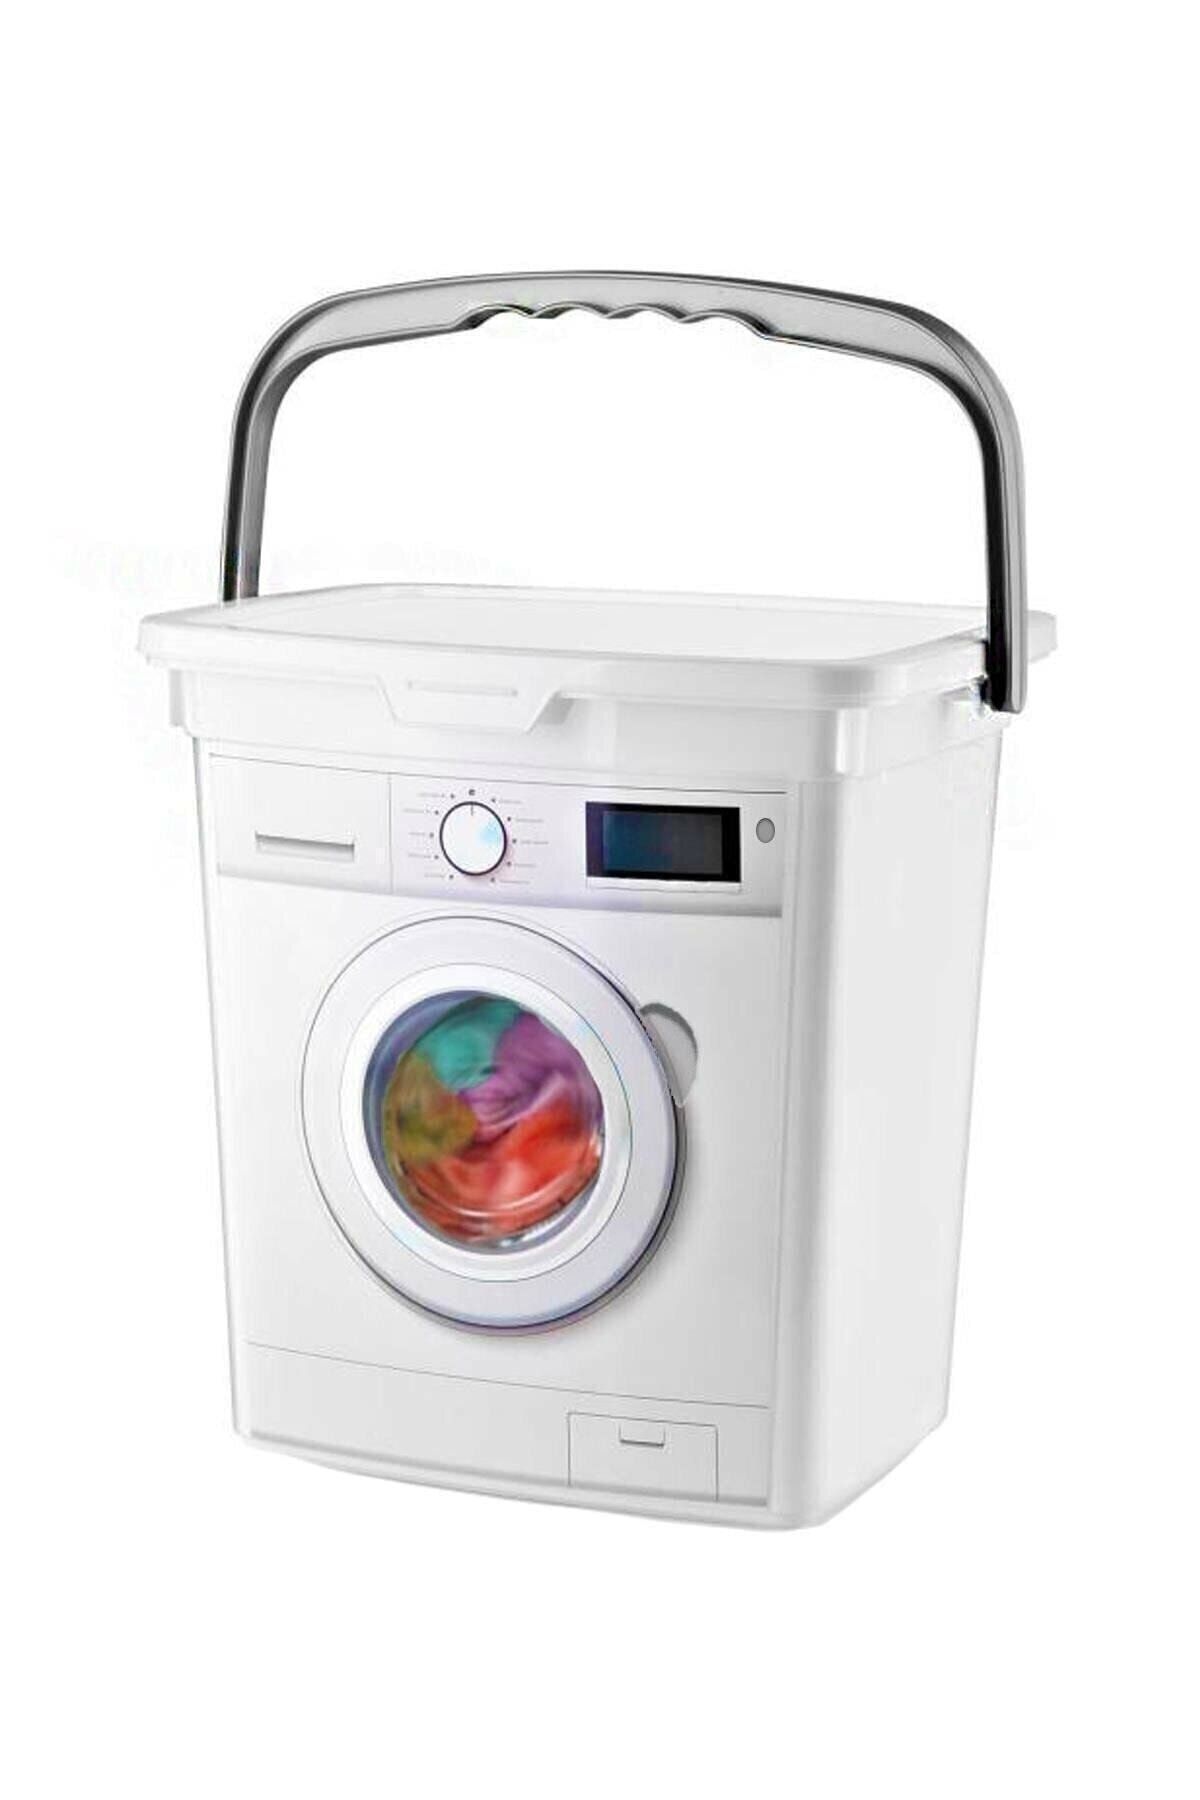 GİLLİ STORE Çamaşır Makinesi Görünümlü Kapaklı Deterjanlık Taşınabilir Deterjan Saklama Kutusu 6 Lt.